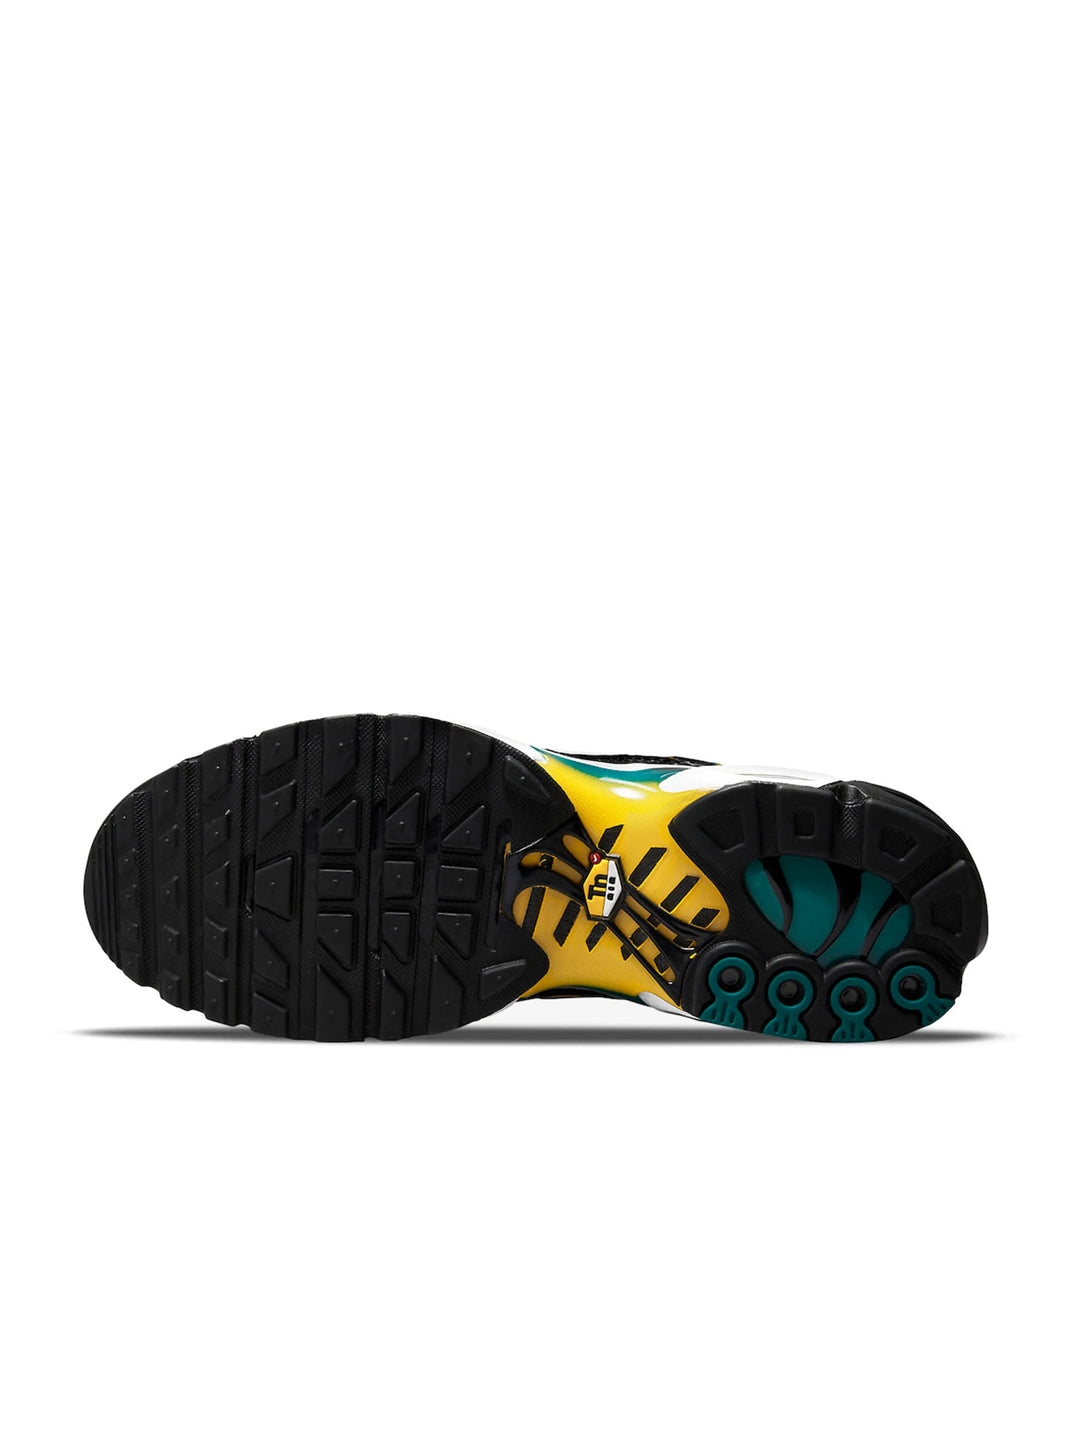 Nike Air Max Plus Tn Black Teal Yellow Prior